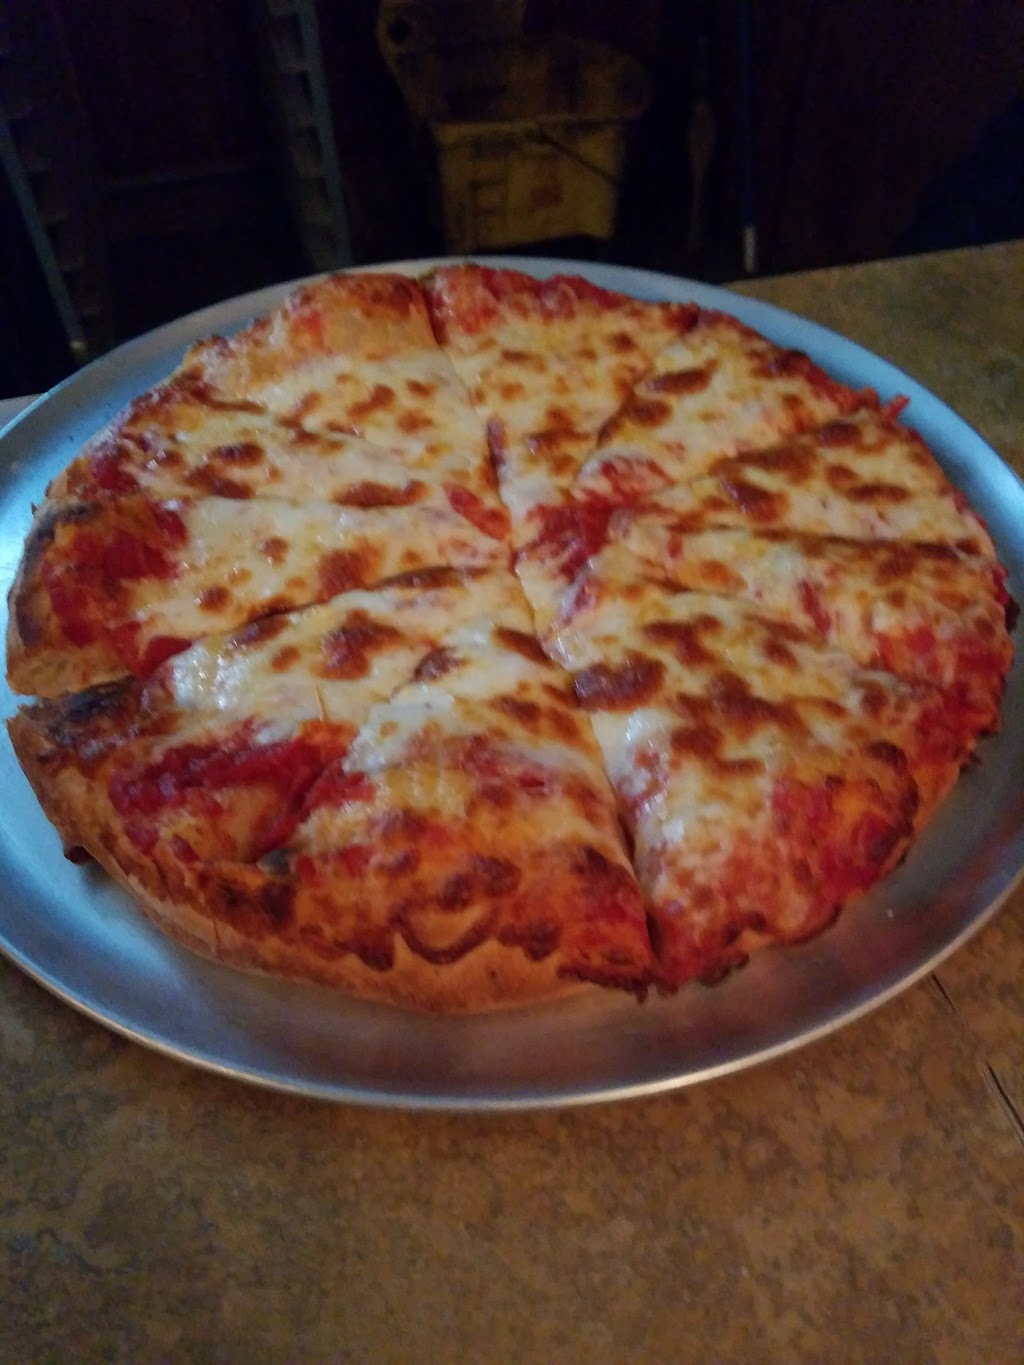 Mama Pepinos Pizza | 2417 Oneil Blvd, White Oak, PA 15131, USA | Phone: (412) 664-9485